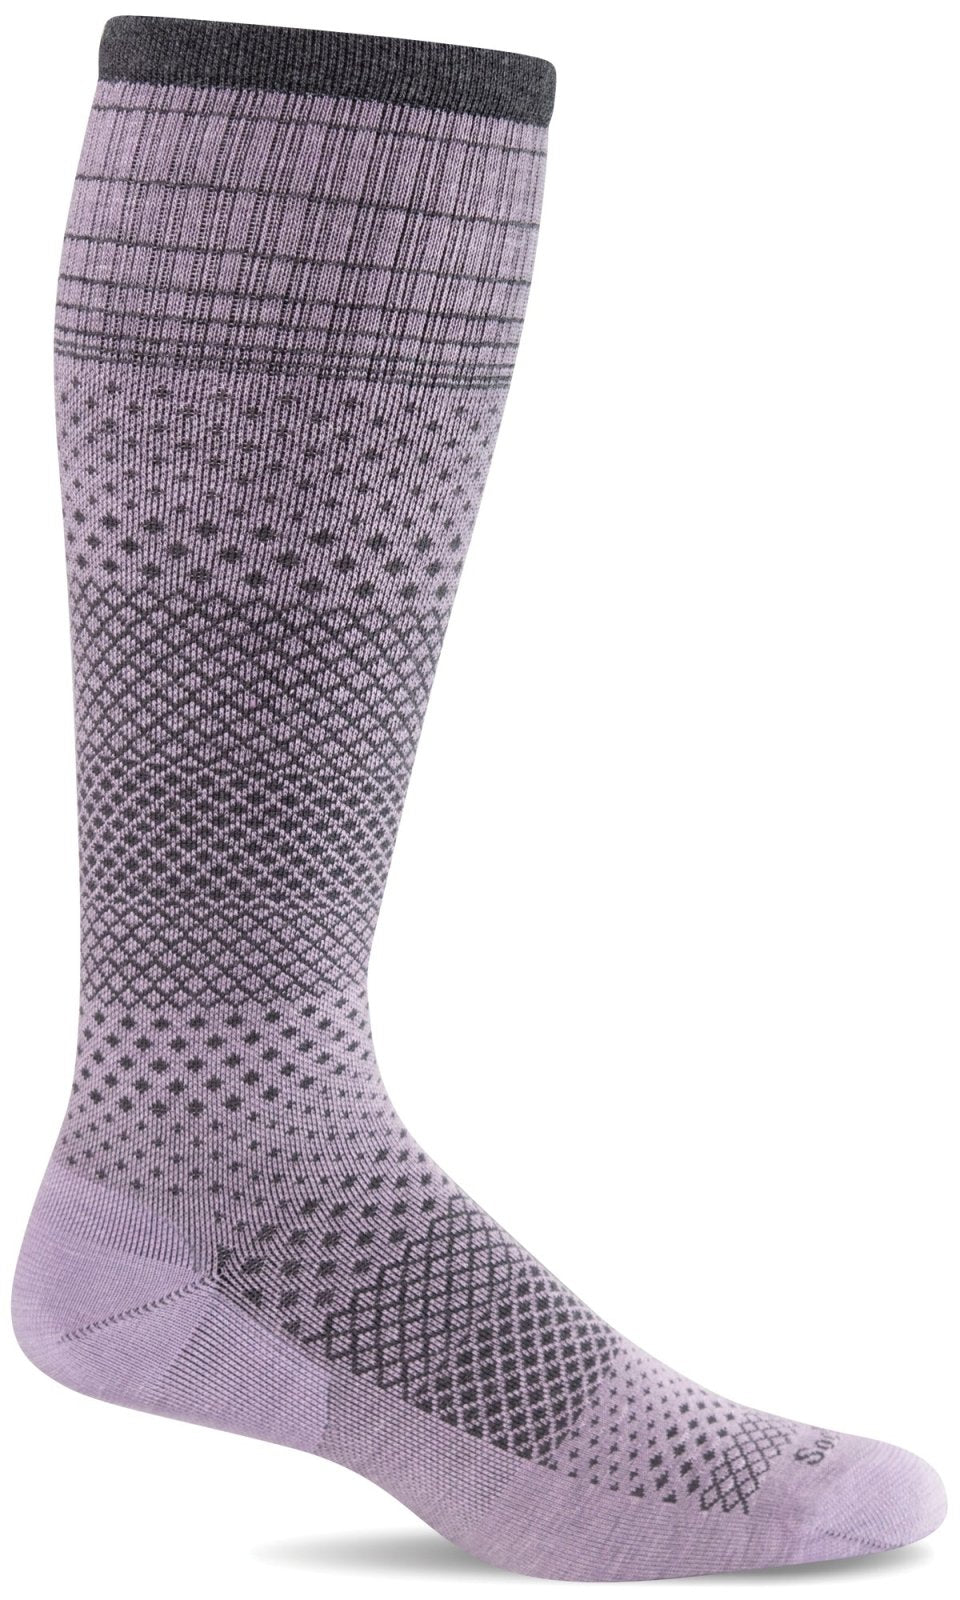 Merino Wool Socks Designed to Help You Feel Better